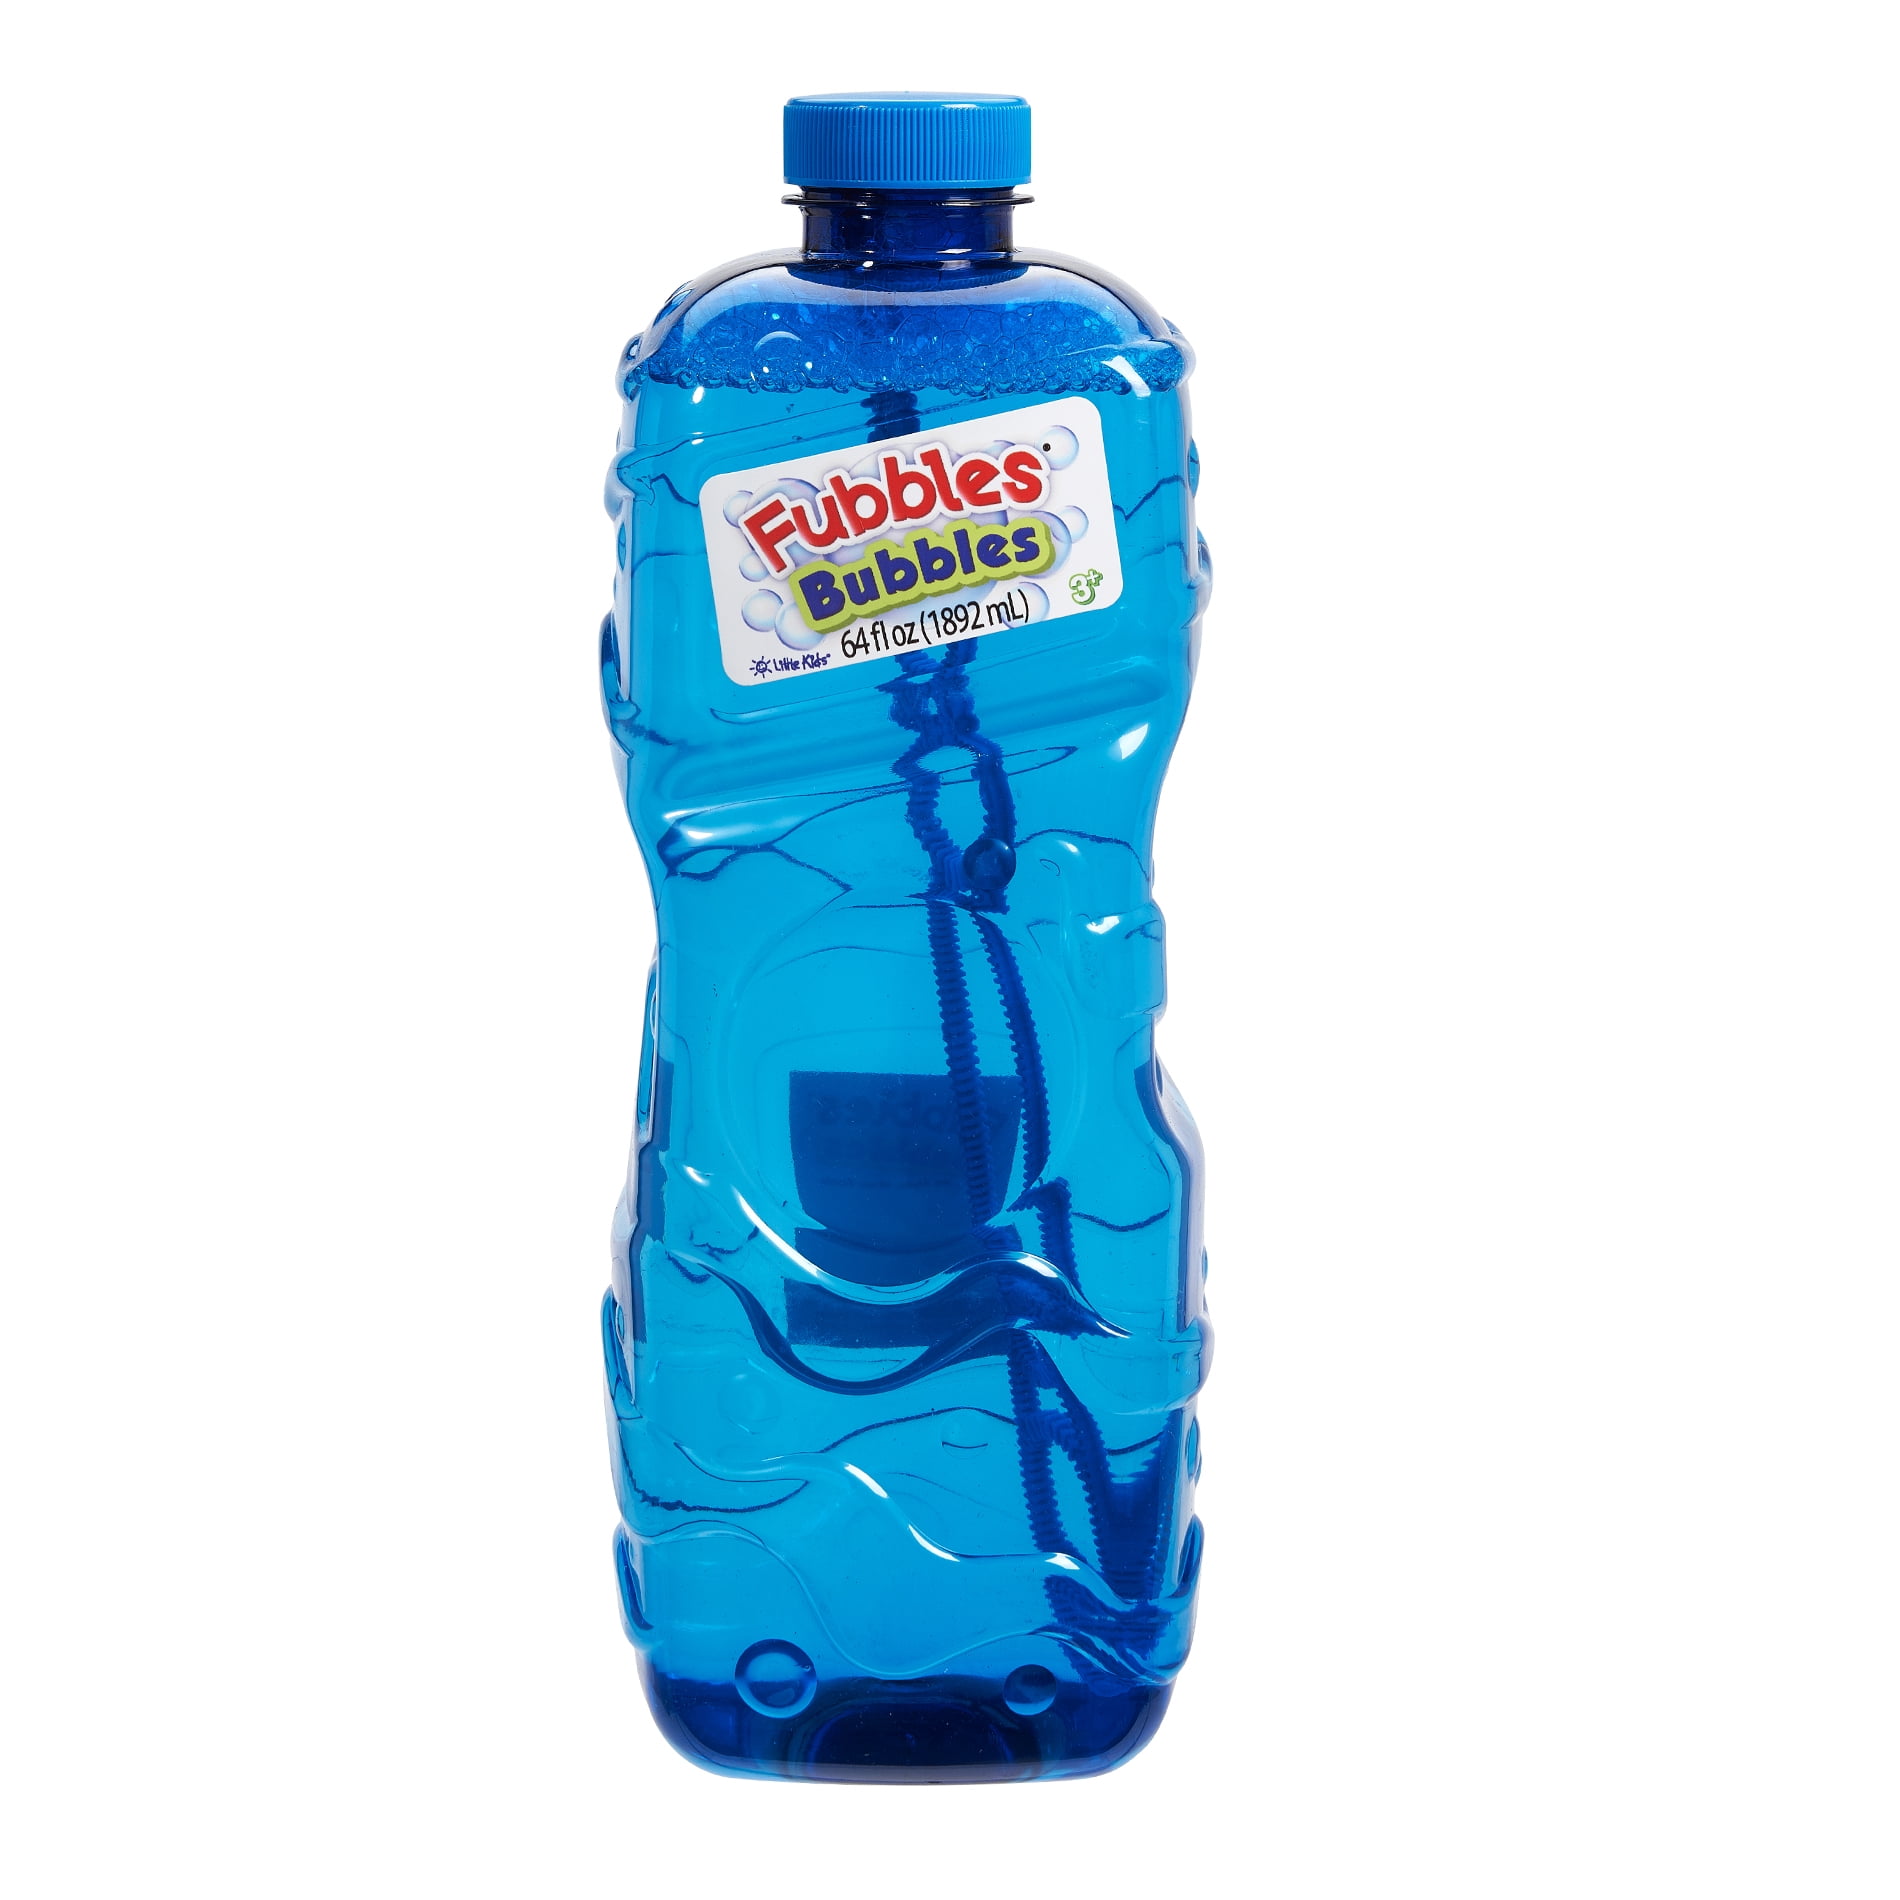 Gazillion 35383 Bubbles 2 Liter Solution for sale online 